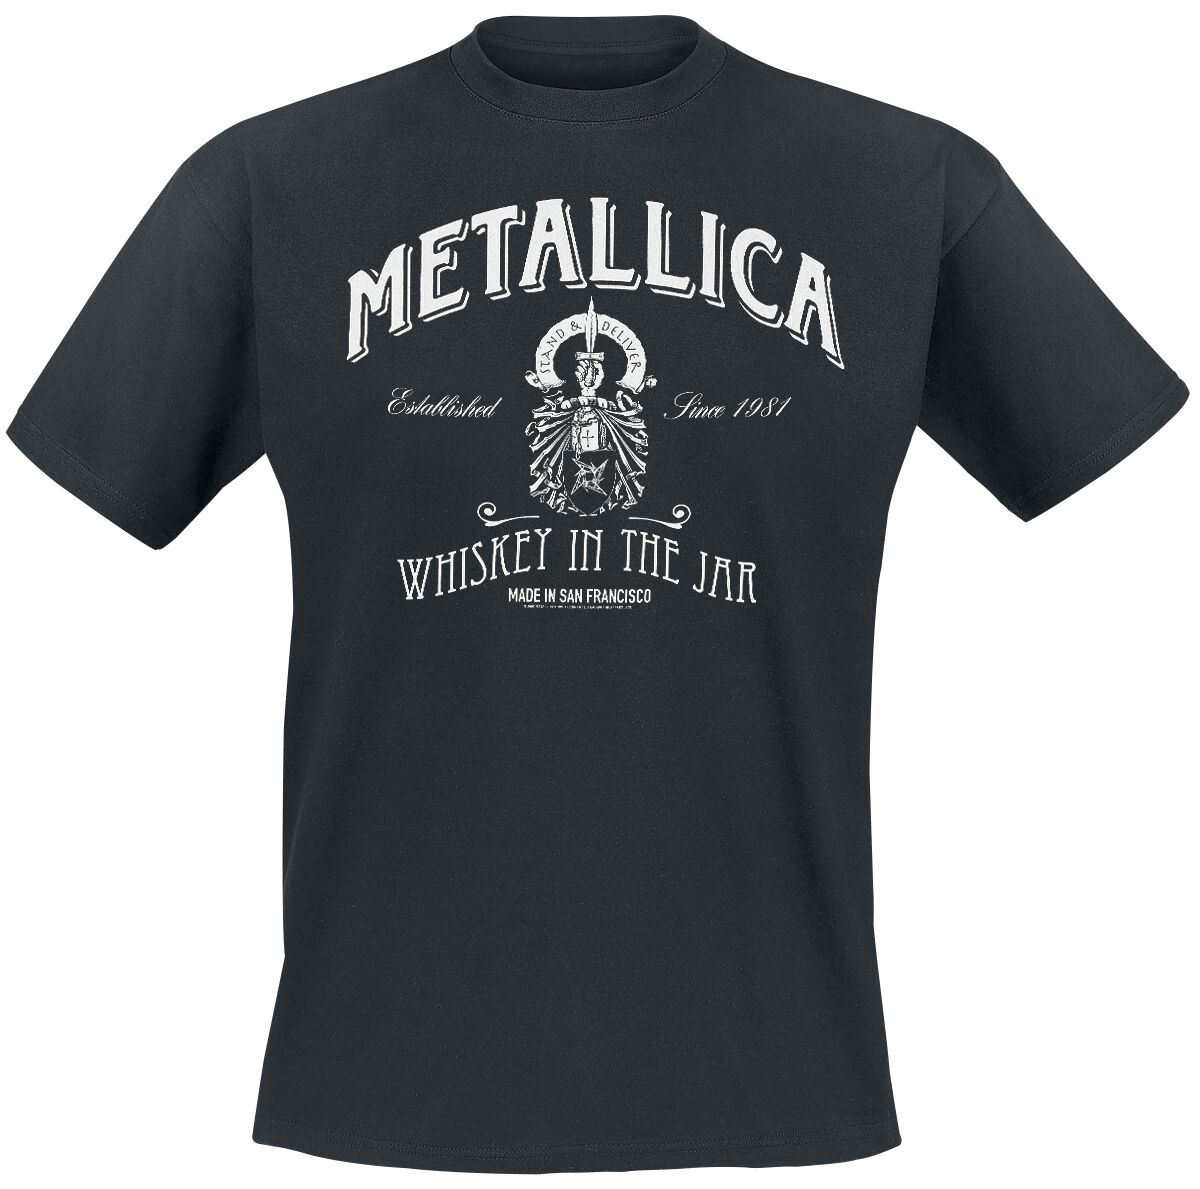 Metallica T-Shirt - Whiskey In the Jar - S bis 5XL - für Männer - Größe S - schwarz  - Lizenziertes Merchandise!